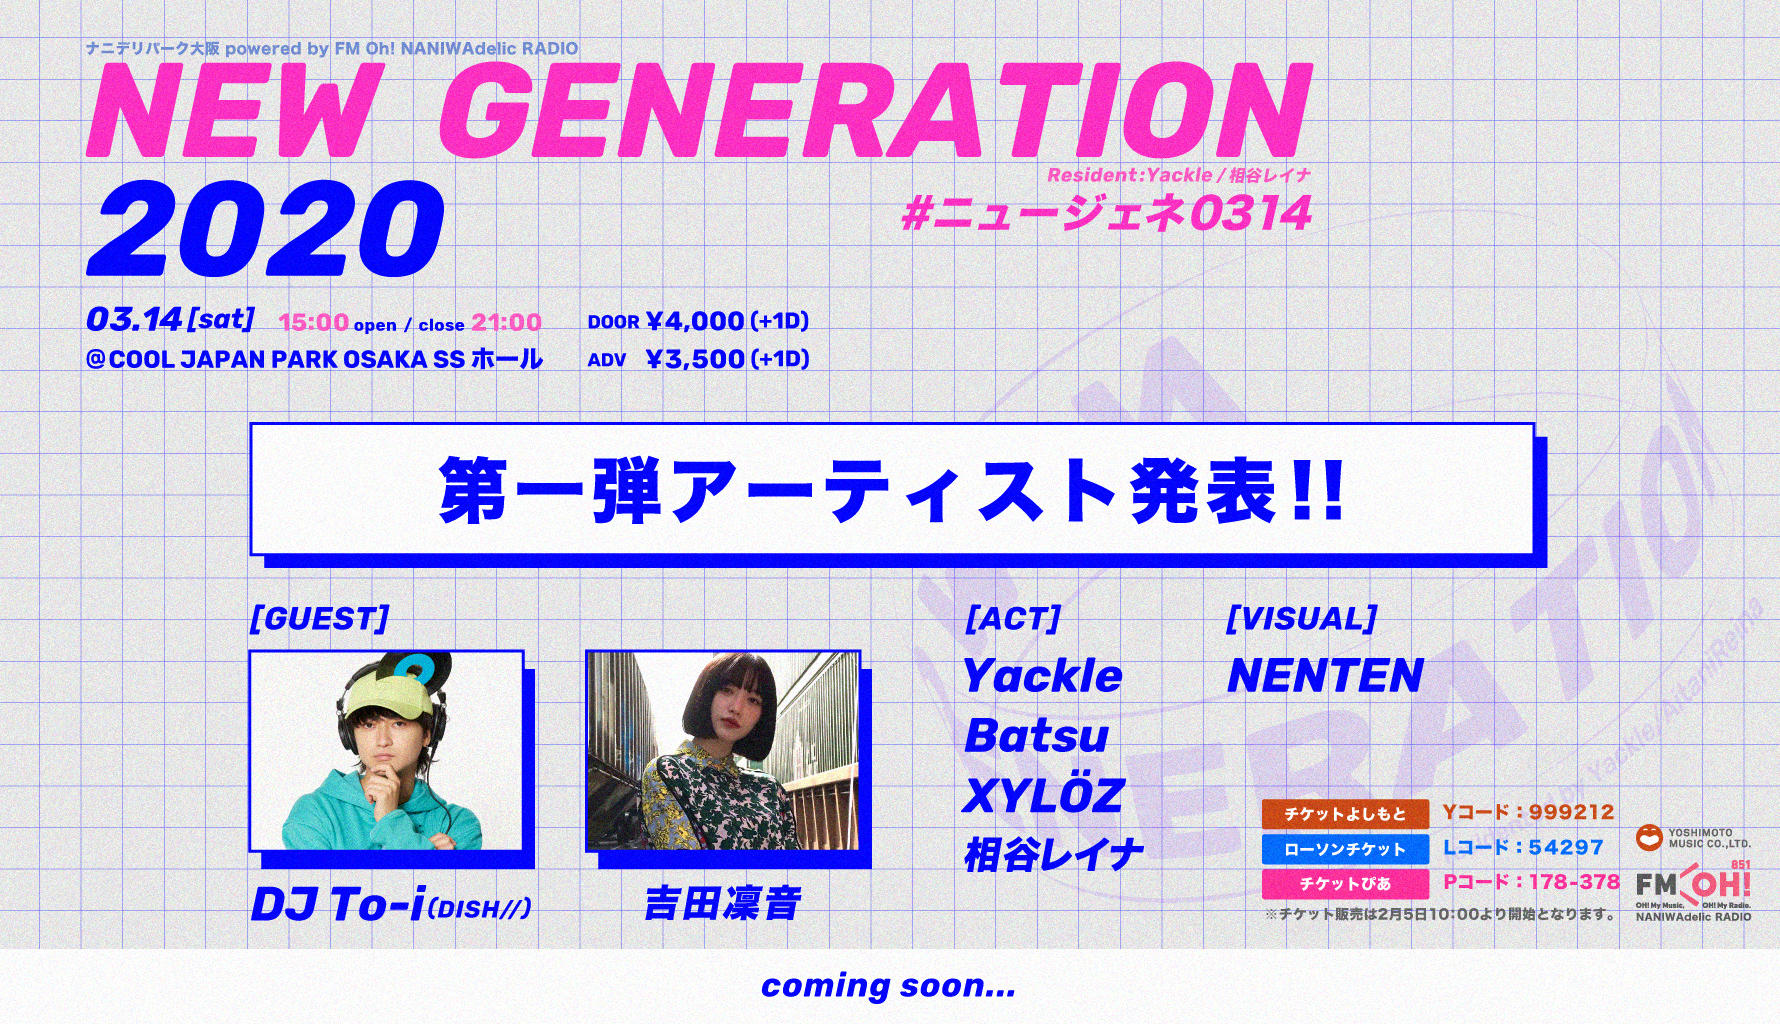 03 14 土 に New Generation を開催 Yuukiyamaguchi